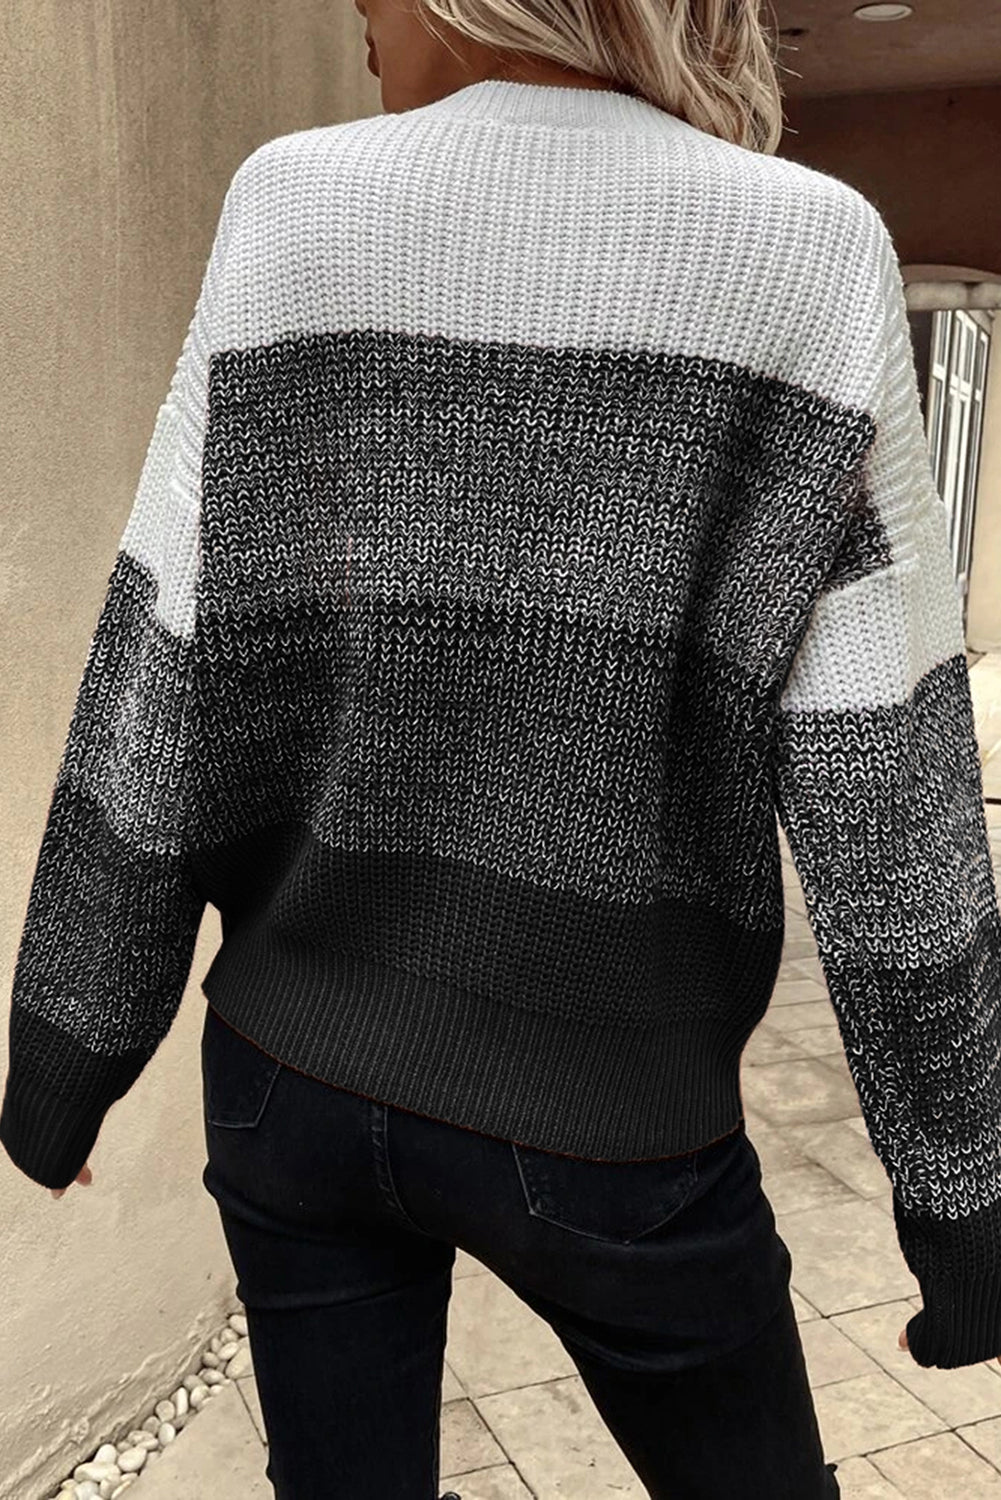 Schwarzer Pullover mit geripptem Saum und überschnittenen Schultern im Farbblockdesign